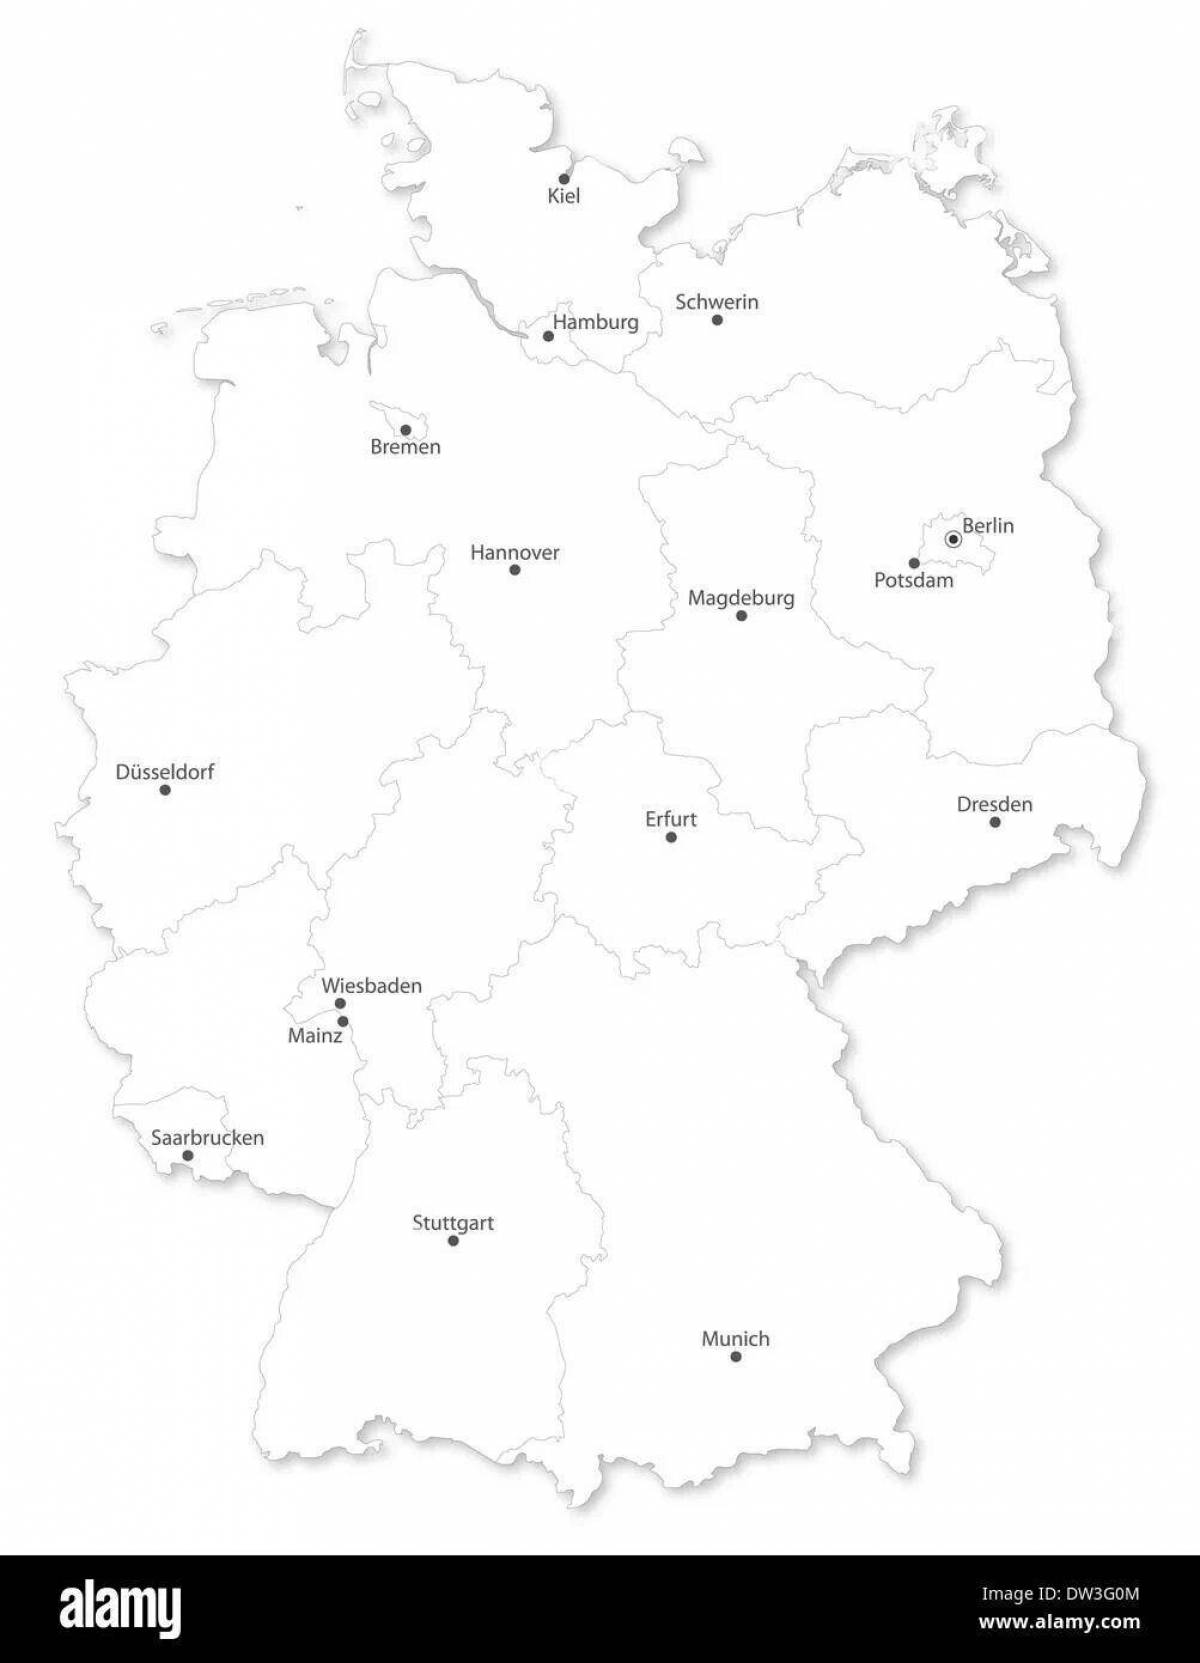 Привлекательная раскраска карты германии